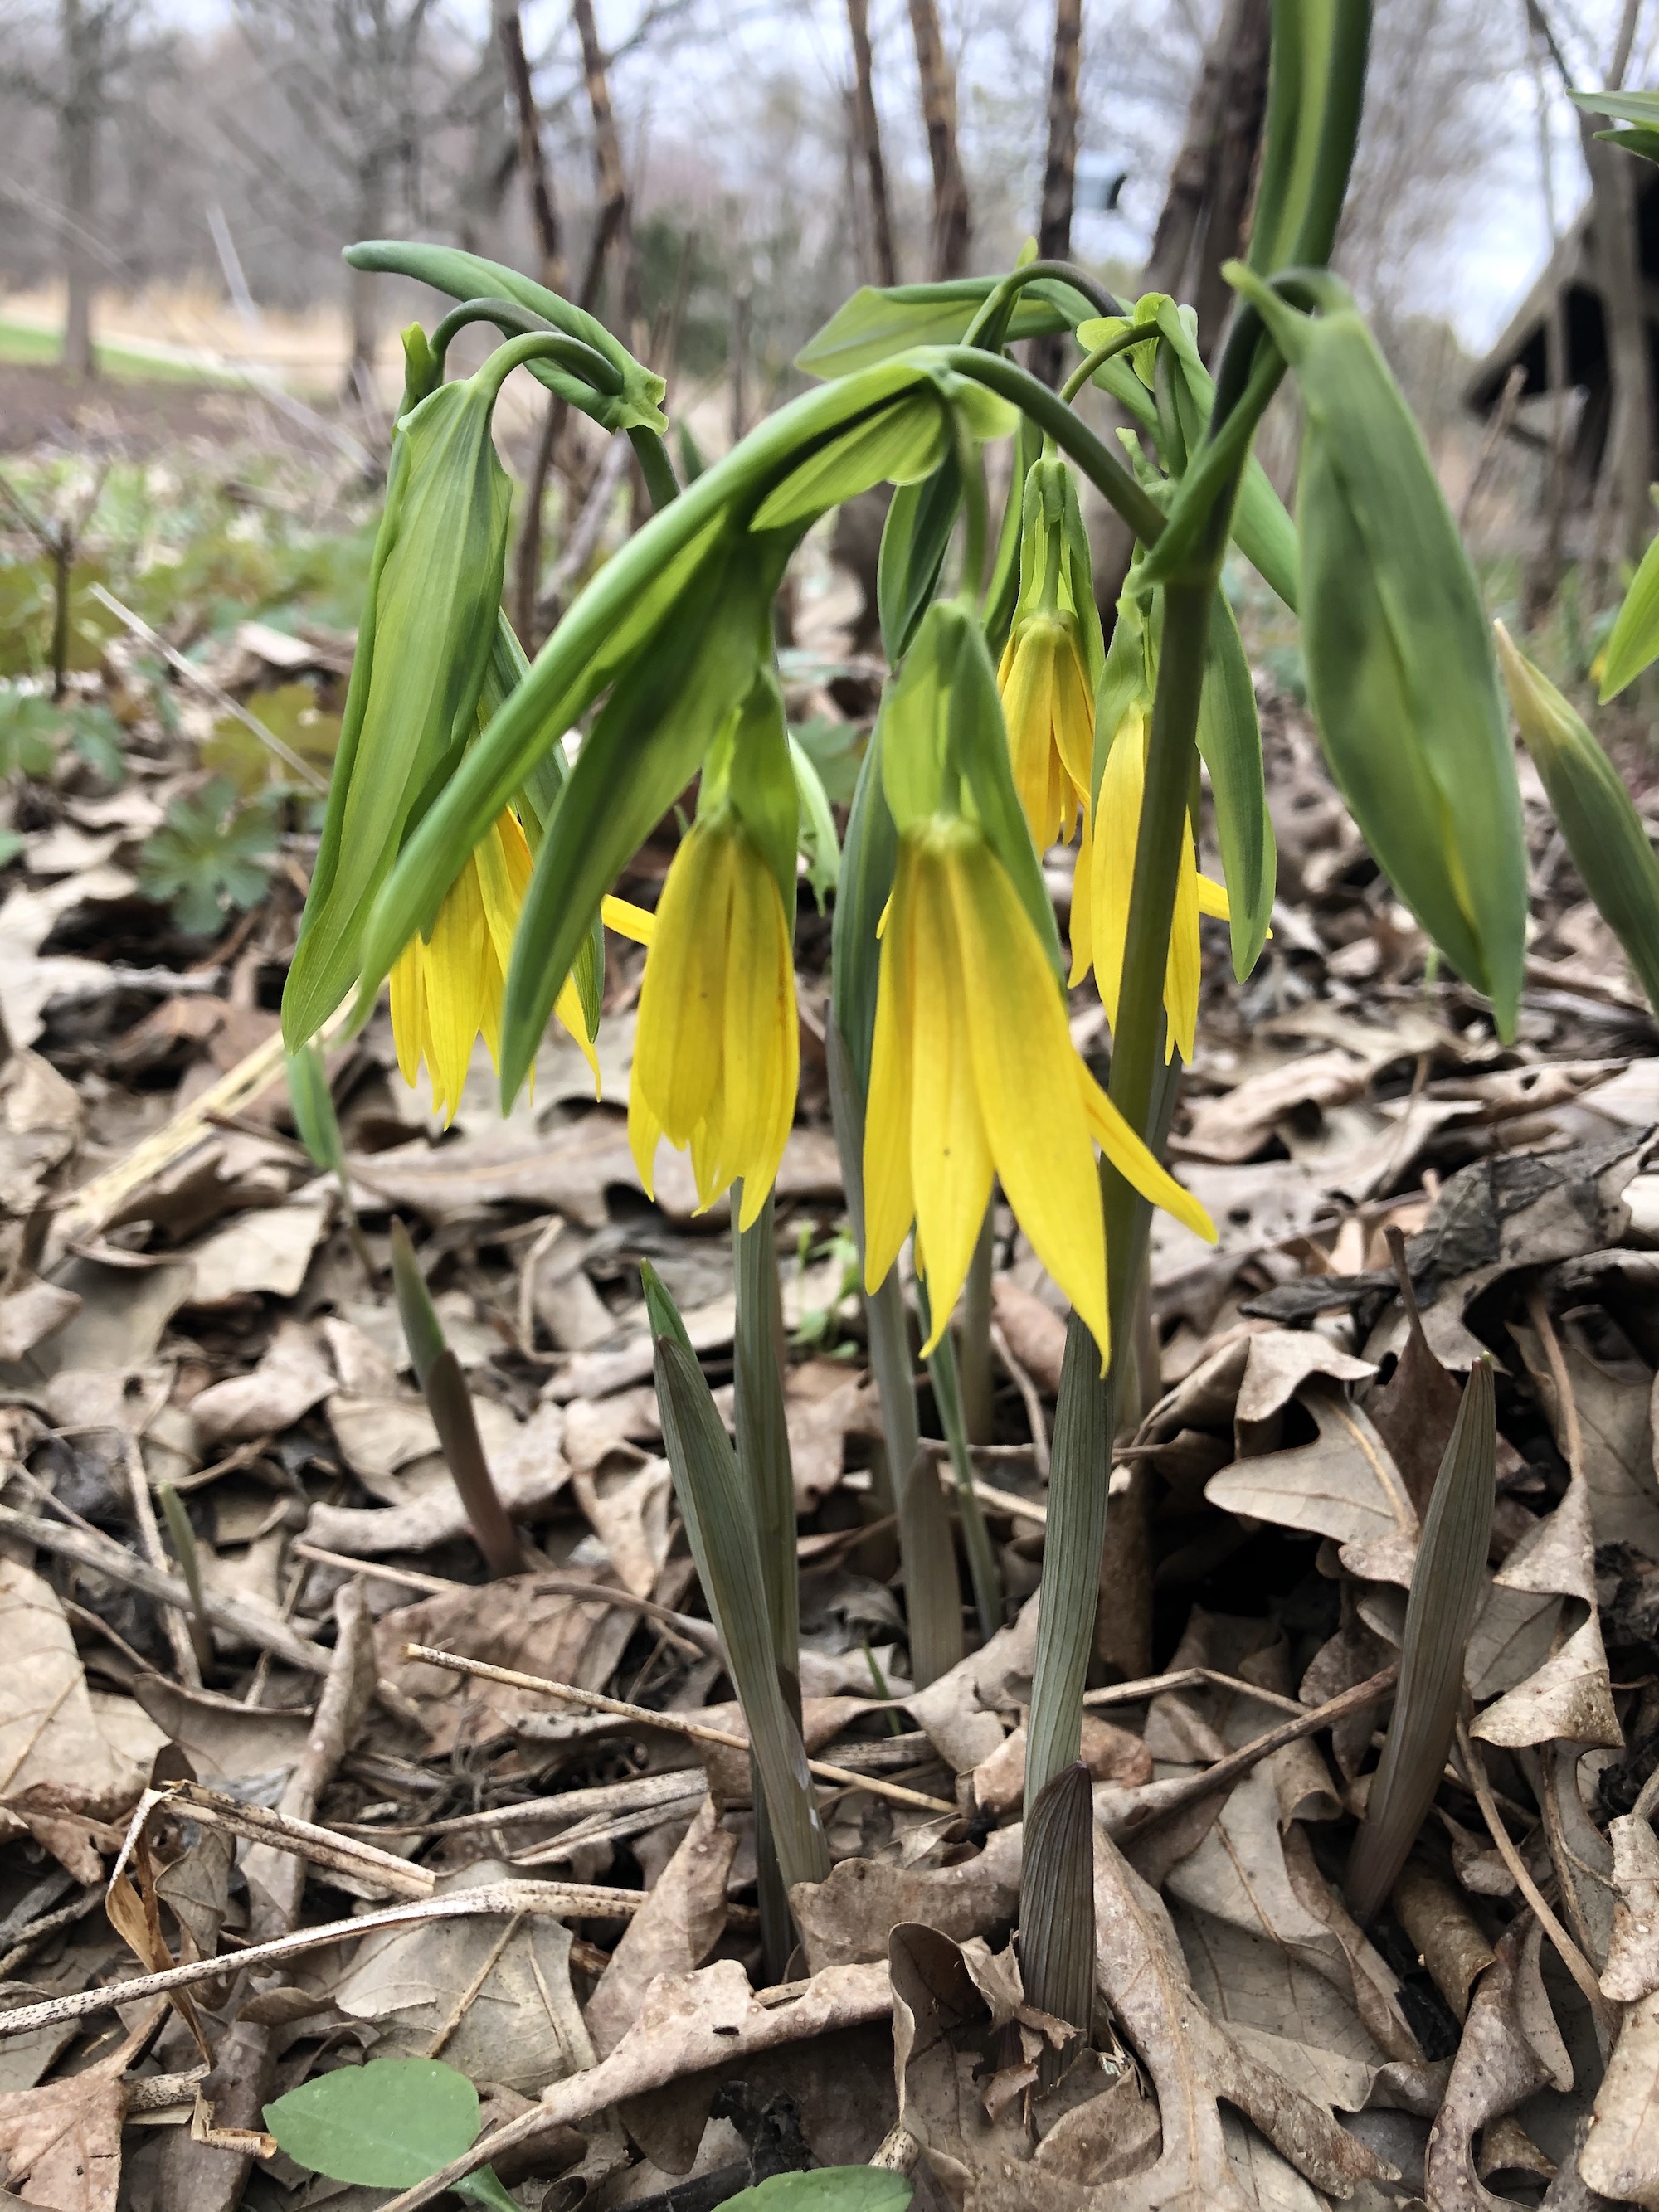 Bellwort in UW Arboretum Native Gardens in Madison, Wisconsin on April 14, 2021.